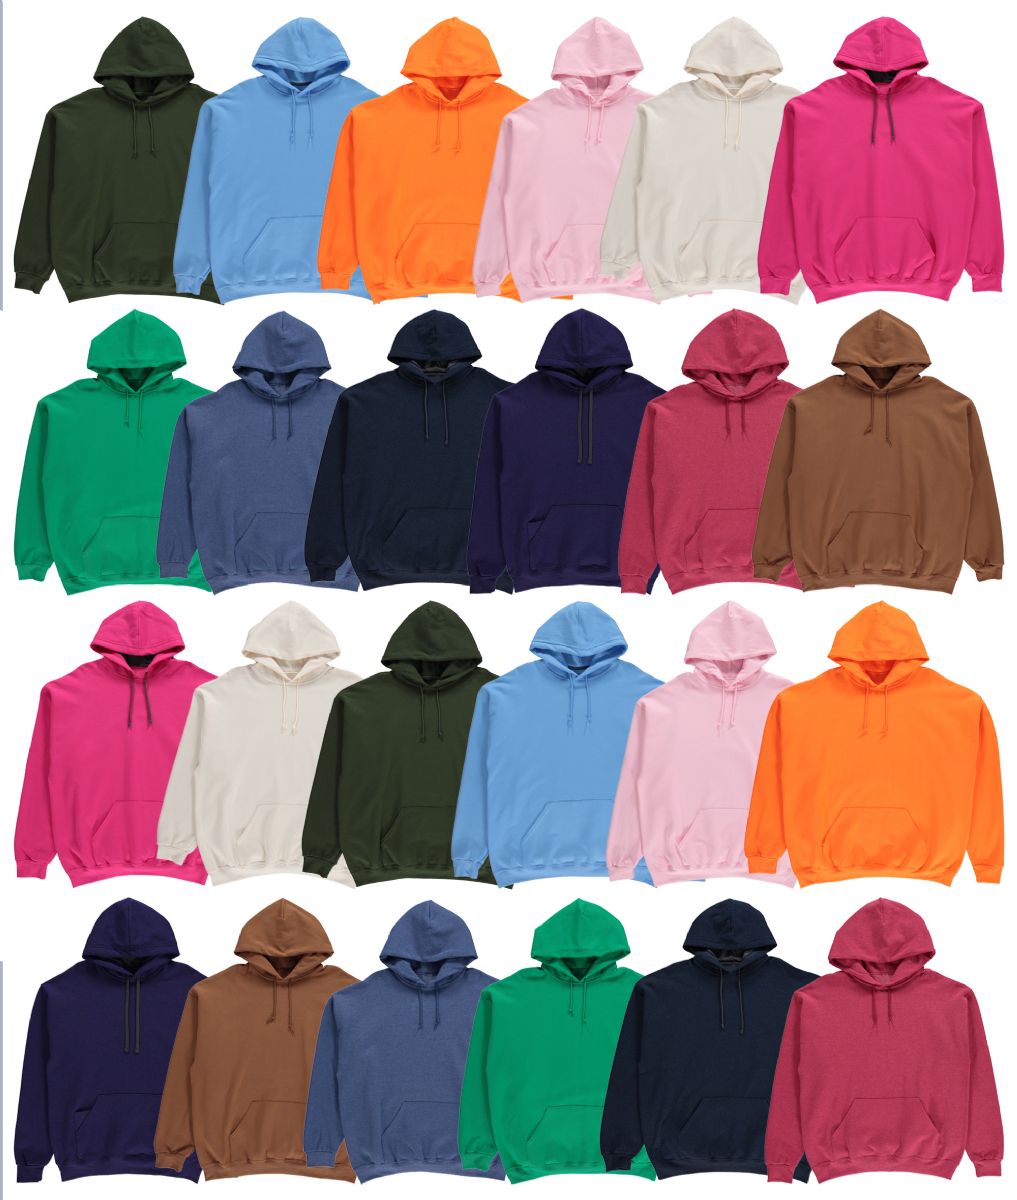 24 Pieces of Men's Irregular Cotton Hoodie Sweatshirt In Assorted Colors Medium